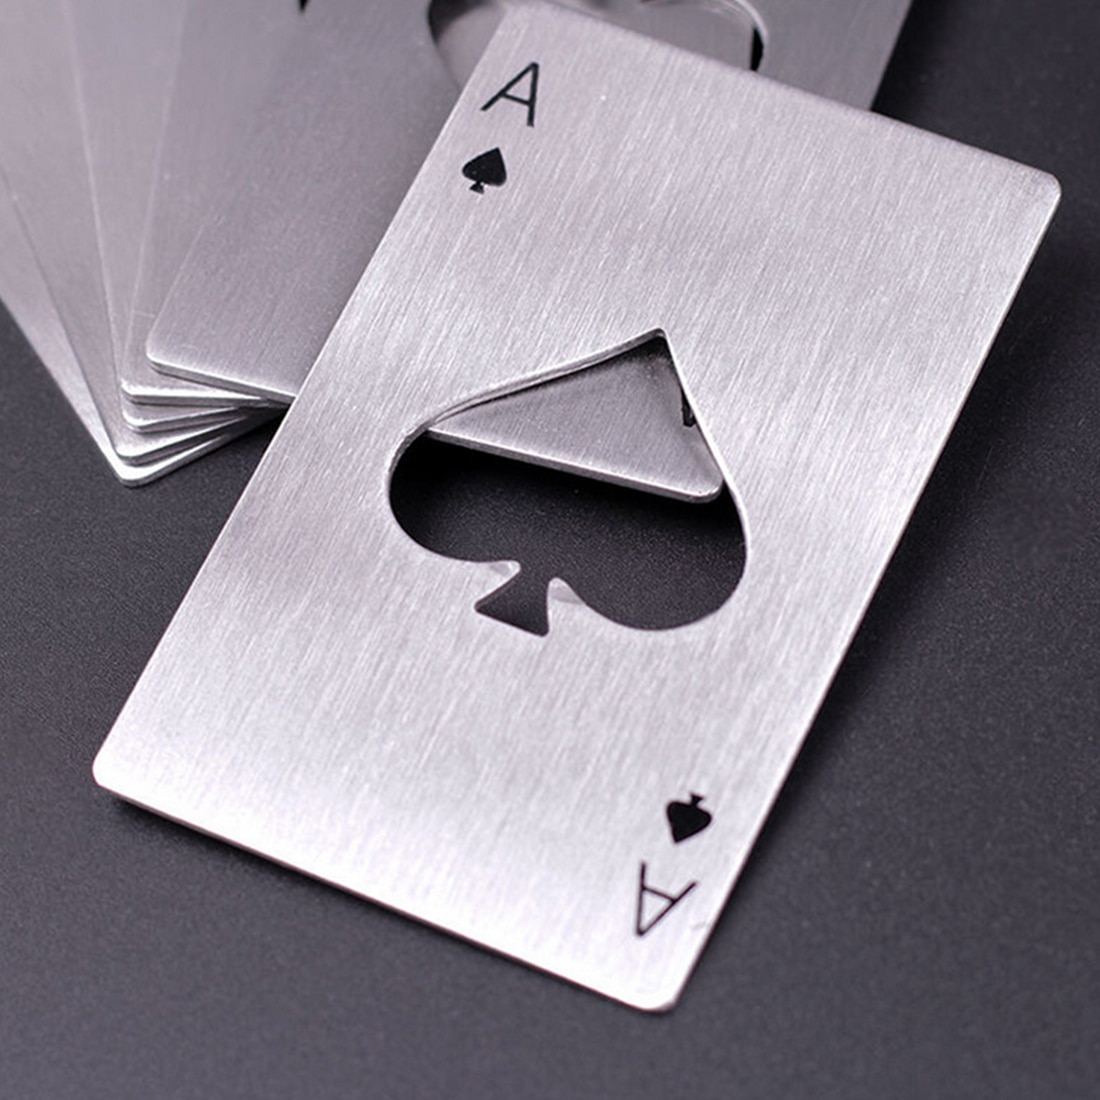 1 Pc Poker Speelkaart Ace Of Spades Bar Tool Soda Bierfles Cap Opener